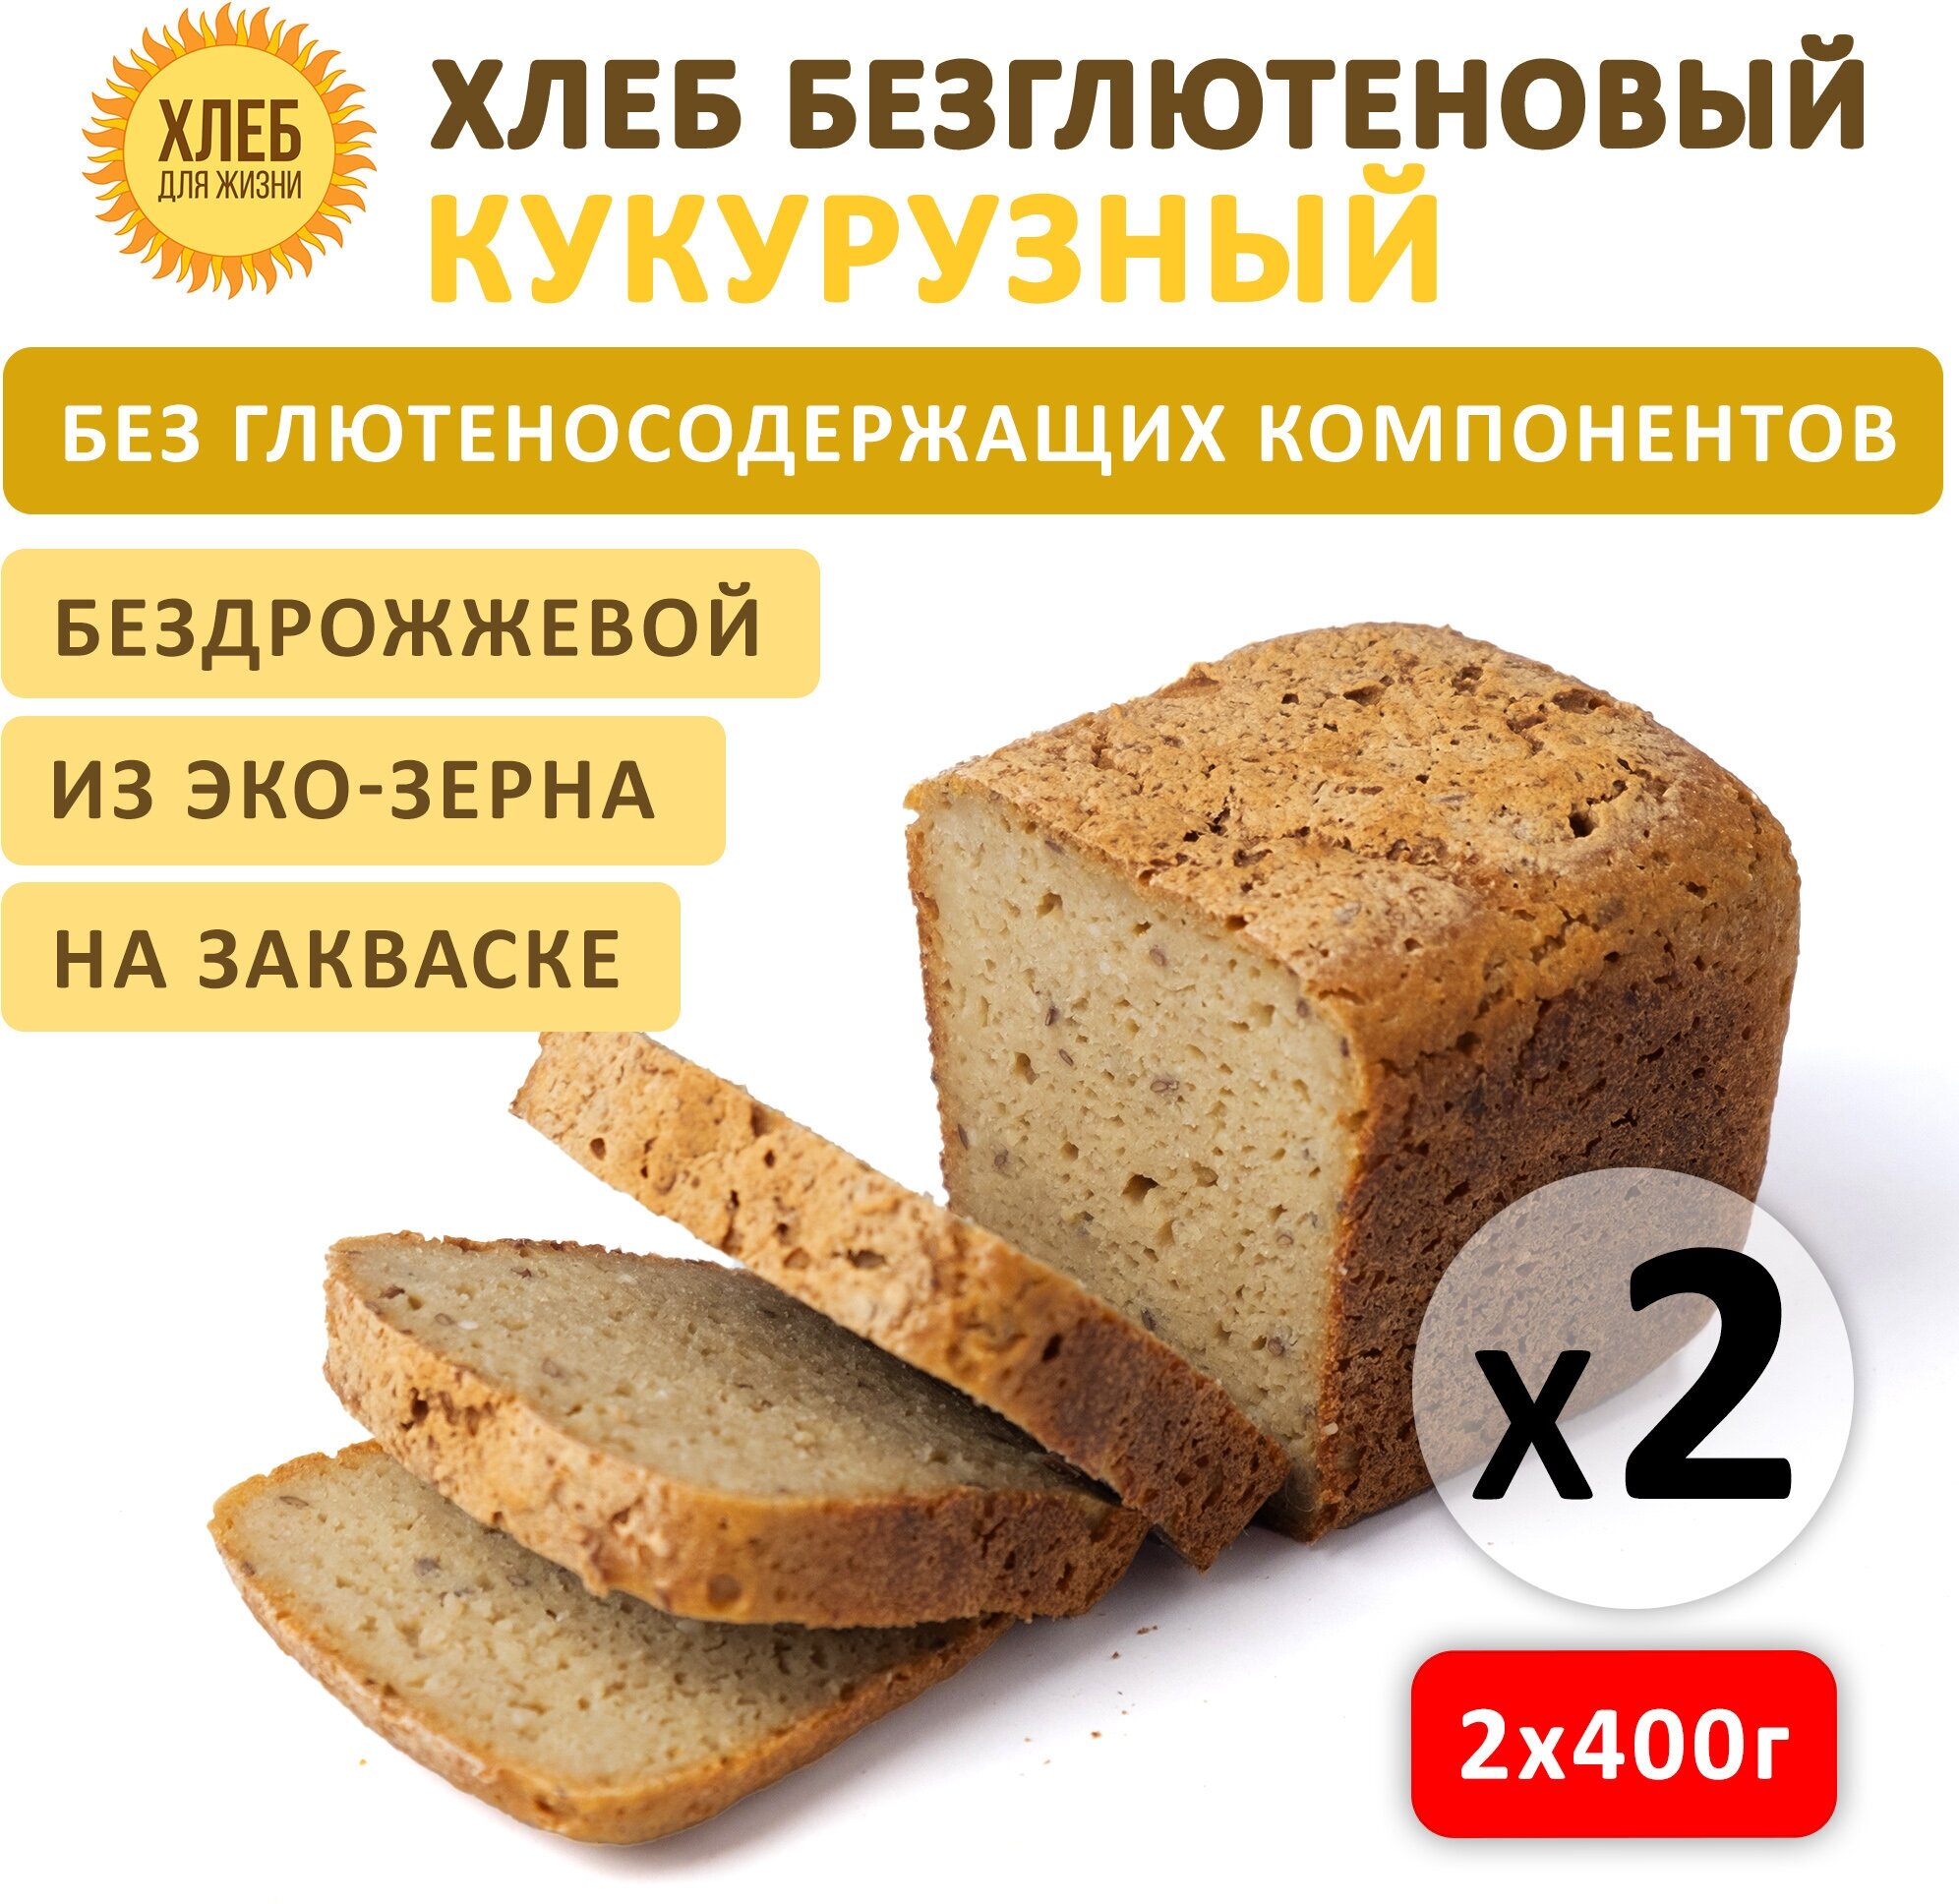 (2х400гр ) Хлеб Кукурузный безглютеновый, цельнозерновой, бездрожжевой на закваске - Хлеб для Жизни